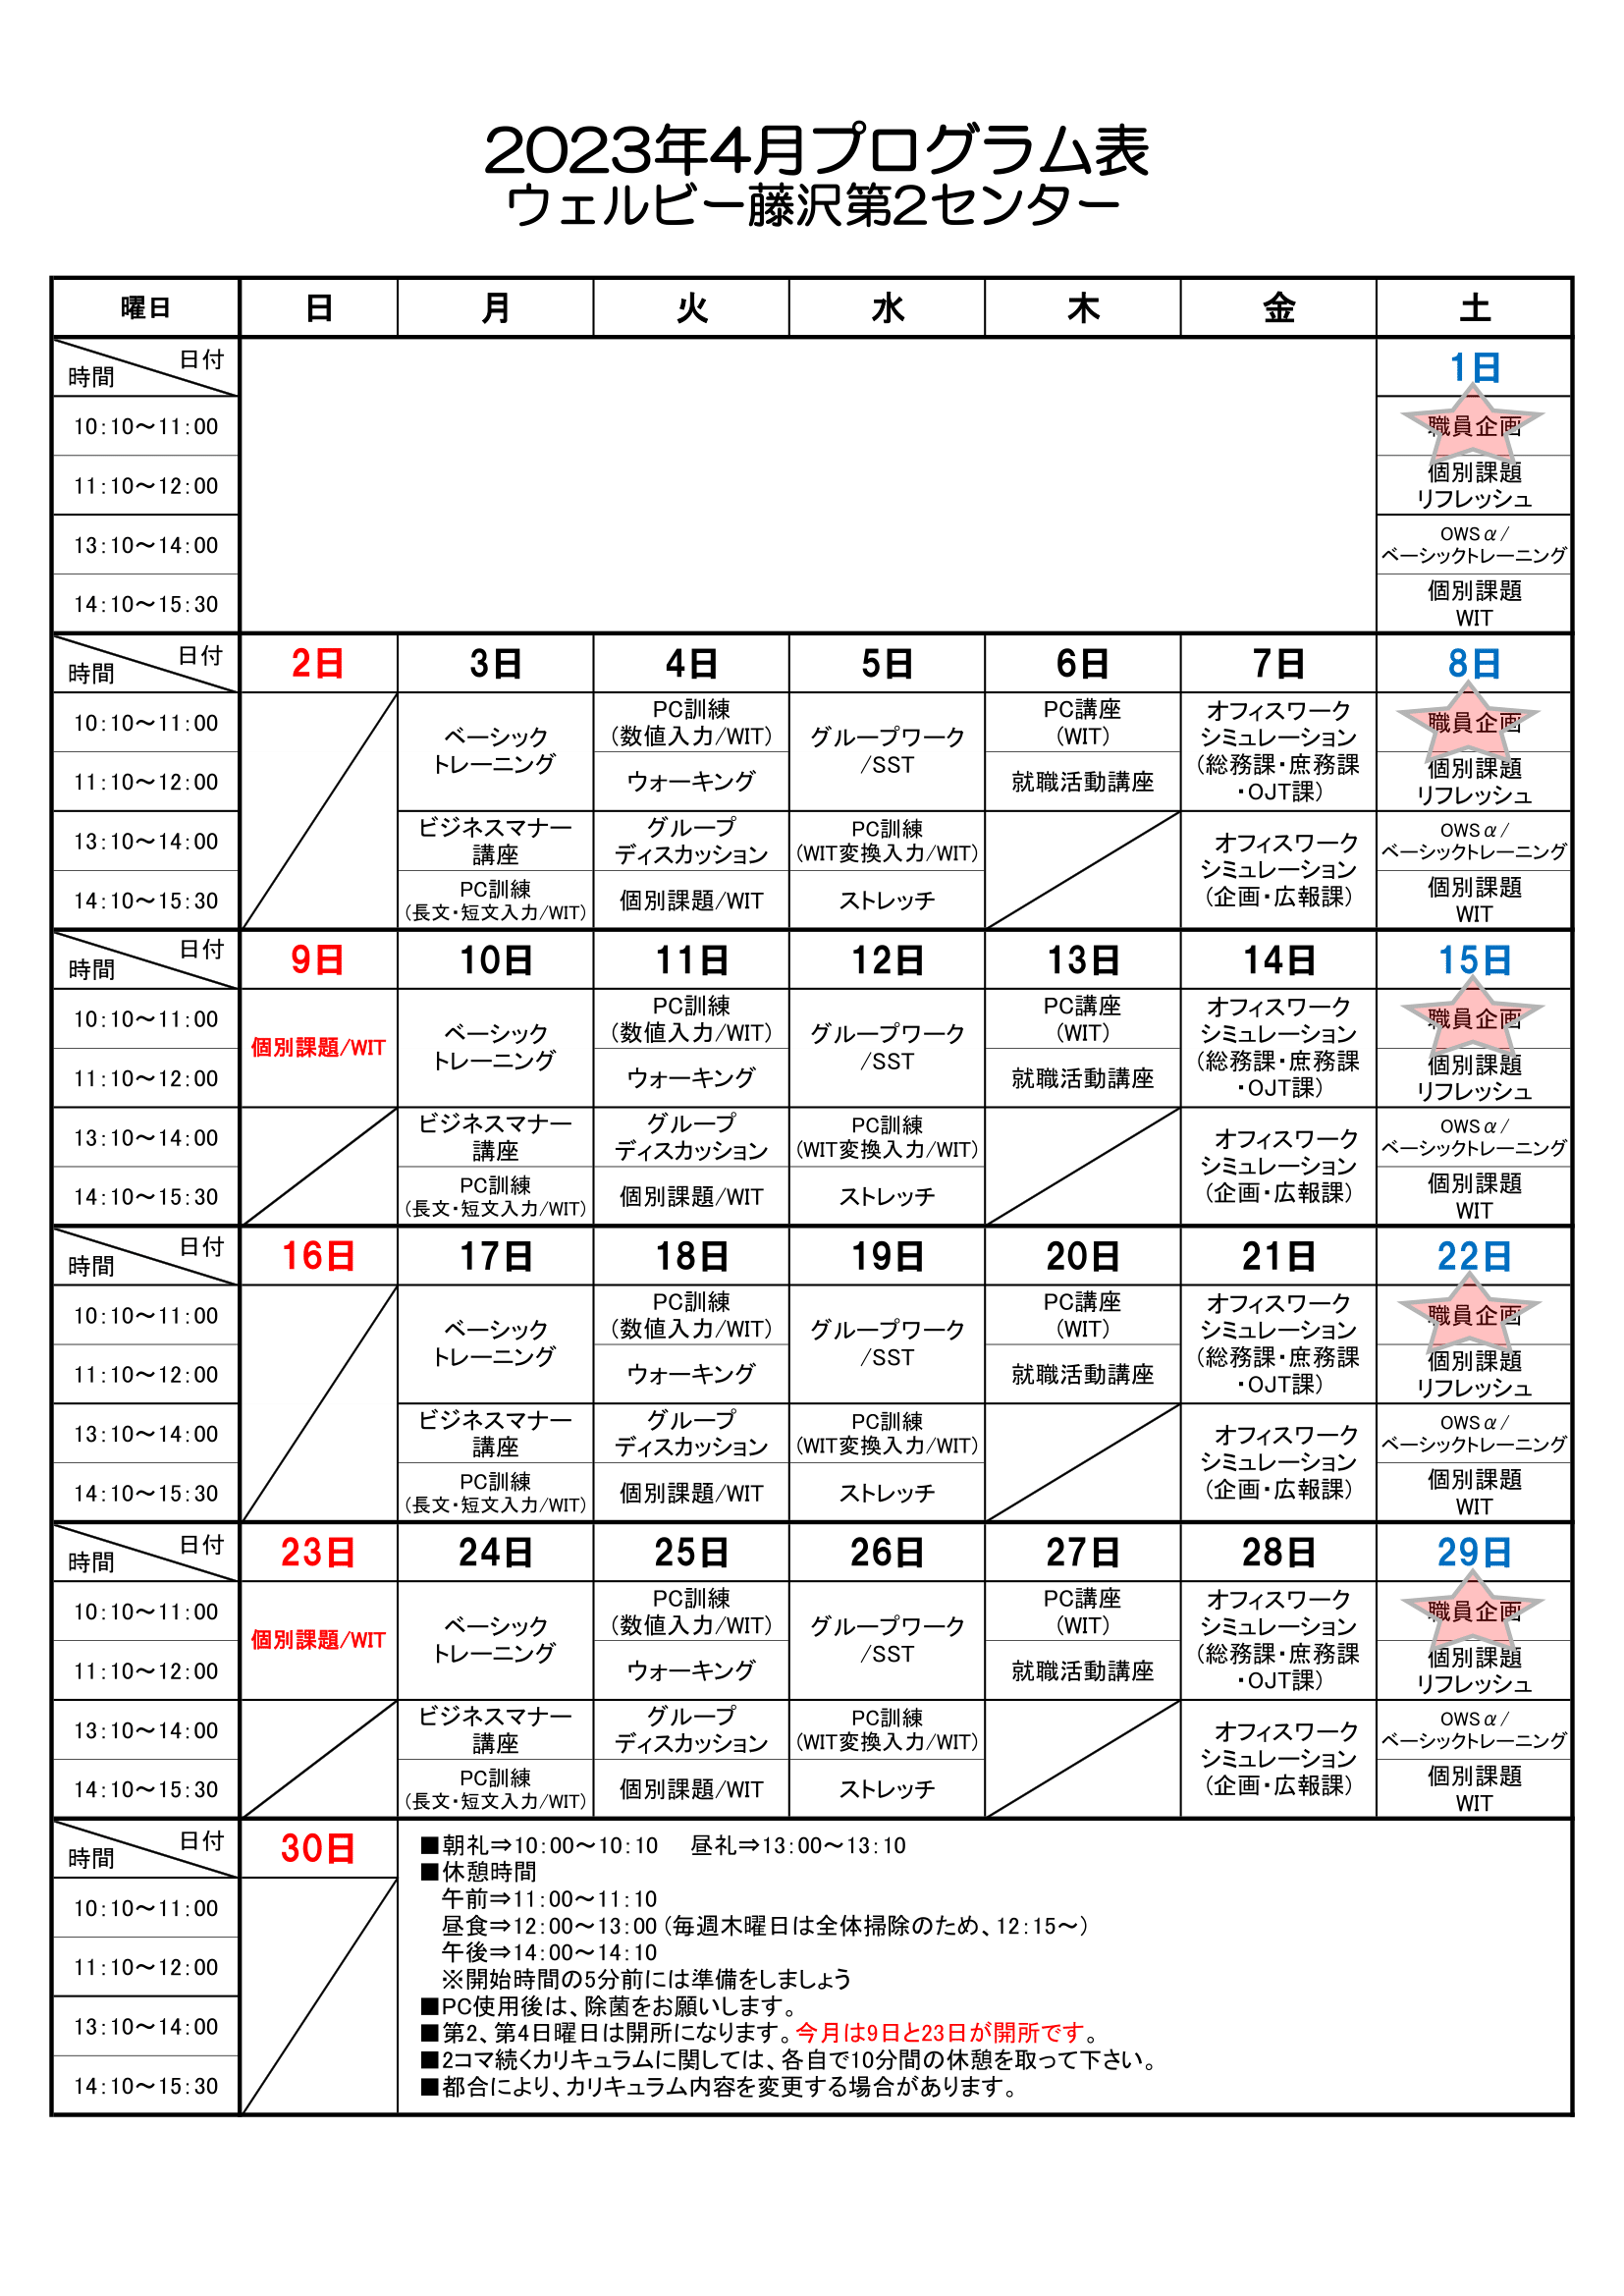 【藤沢第2】2023.04プログラム表-1